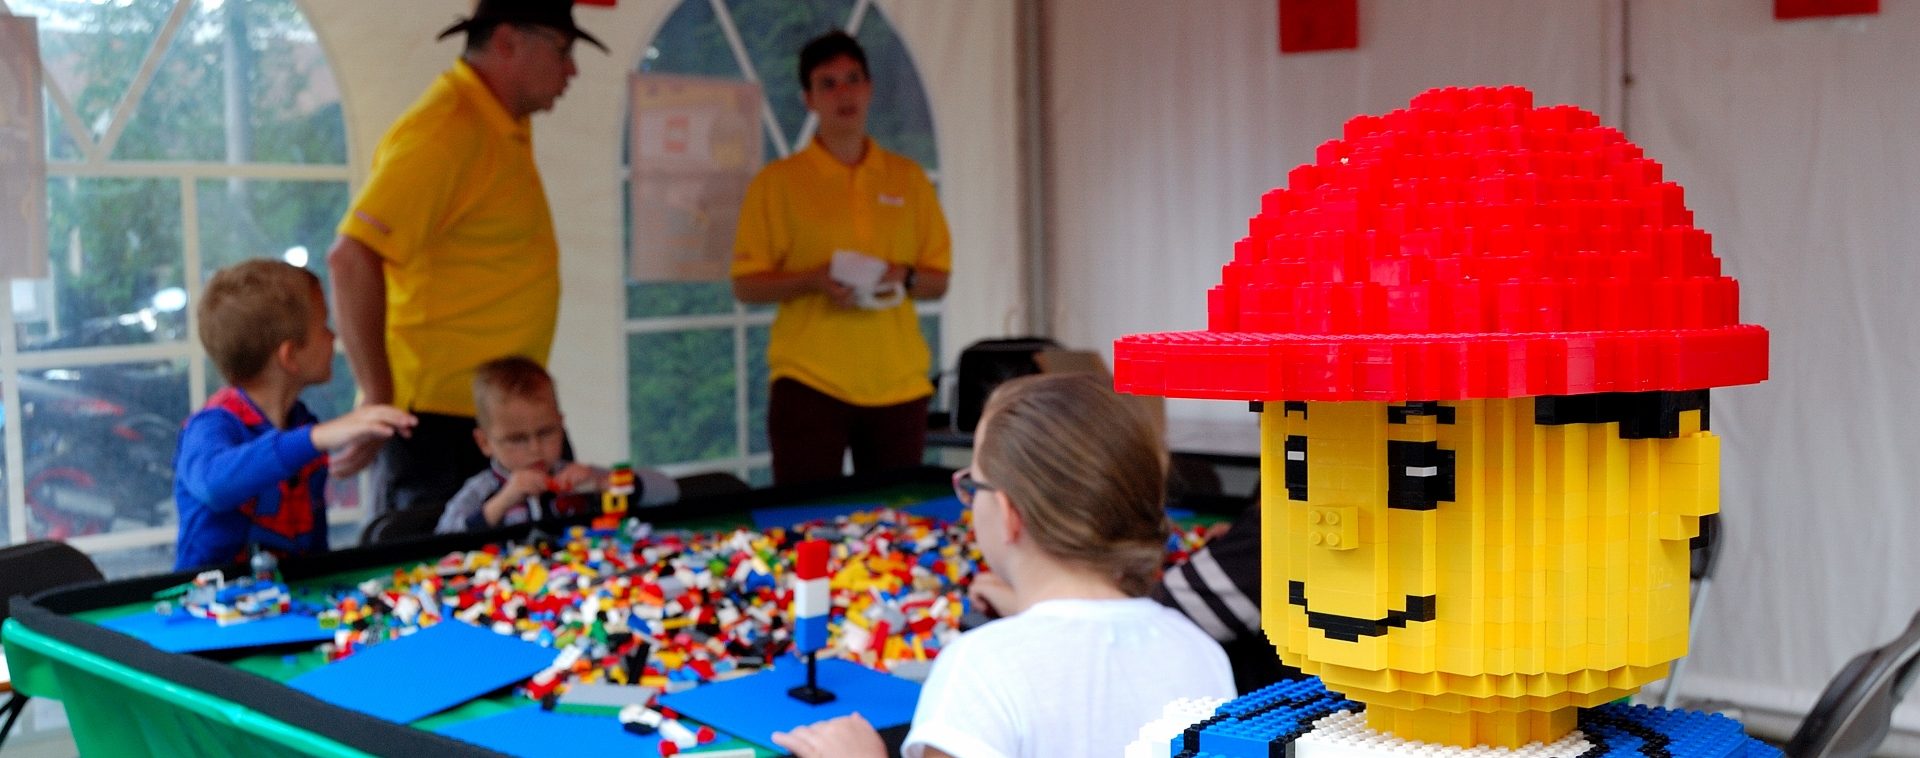 Passend Ademen Wantrouwen organiseert | Bouwen met LEGO | TESSA cultureel projectburo